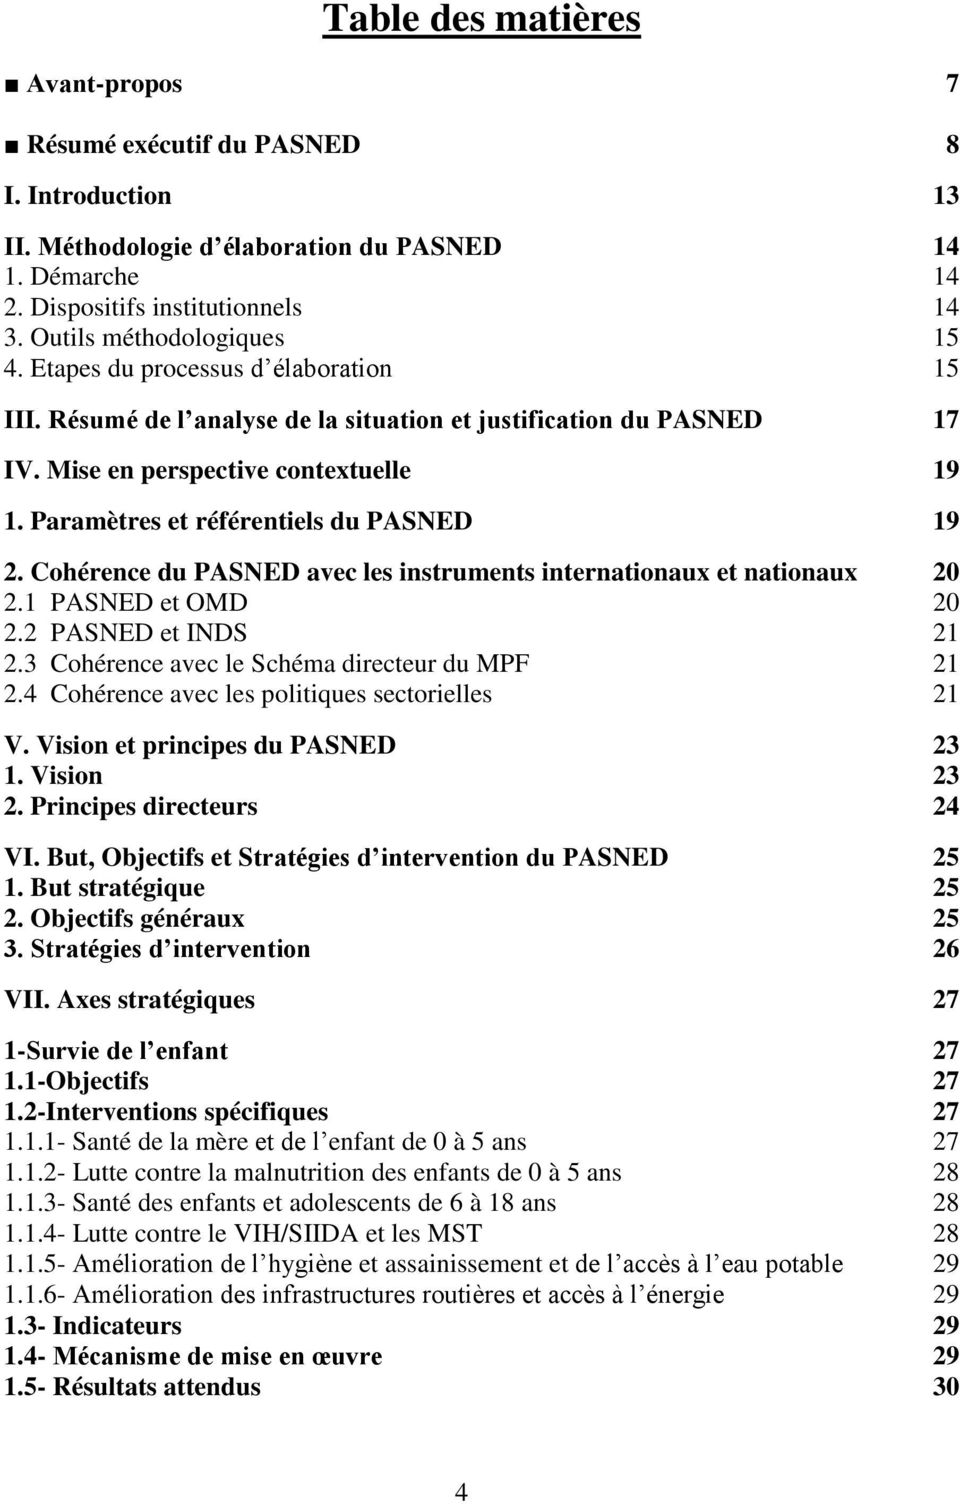 Paramètres et référentiels du PASNED 19 2. Cohérence du PASNED avec les instruments internationaux et nationaux 20 2.1 PASNED et OMD 20 2.2 PASNED et INDS 21 2.